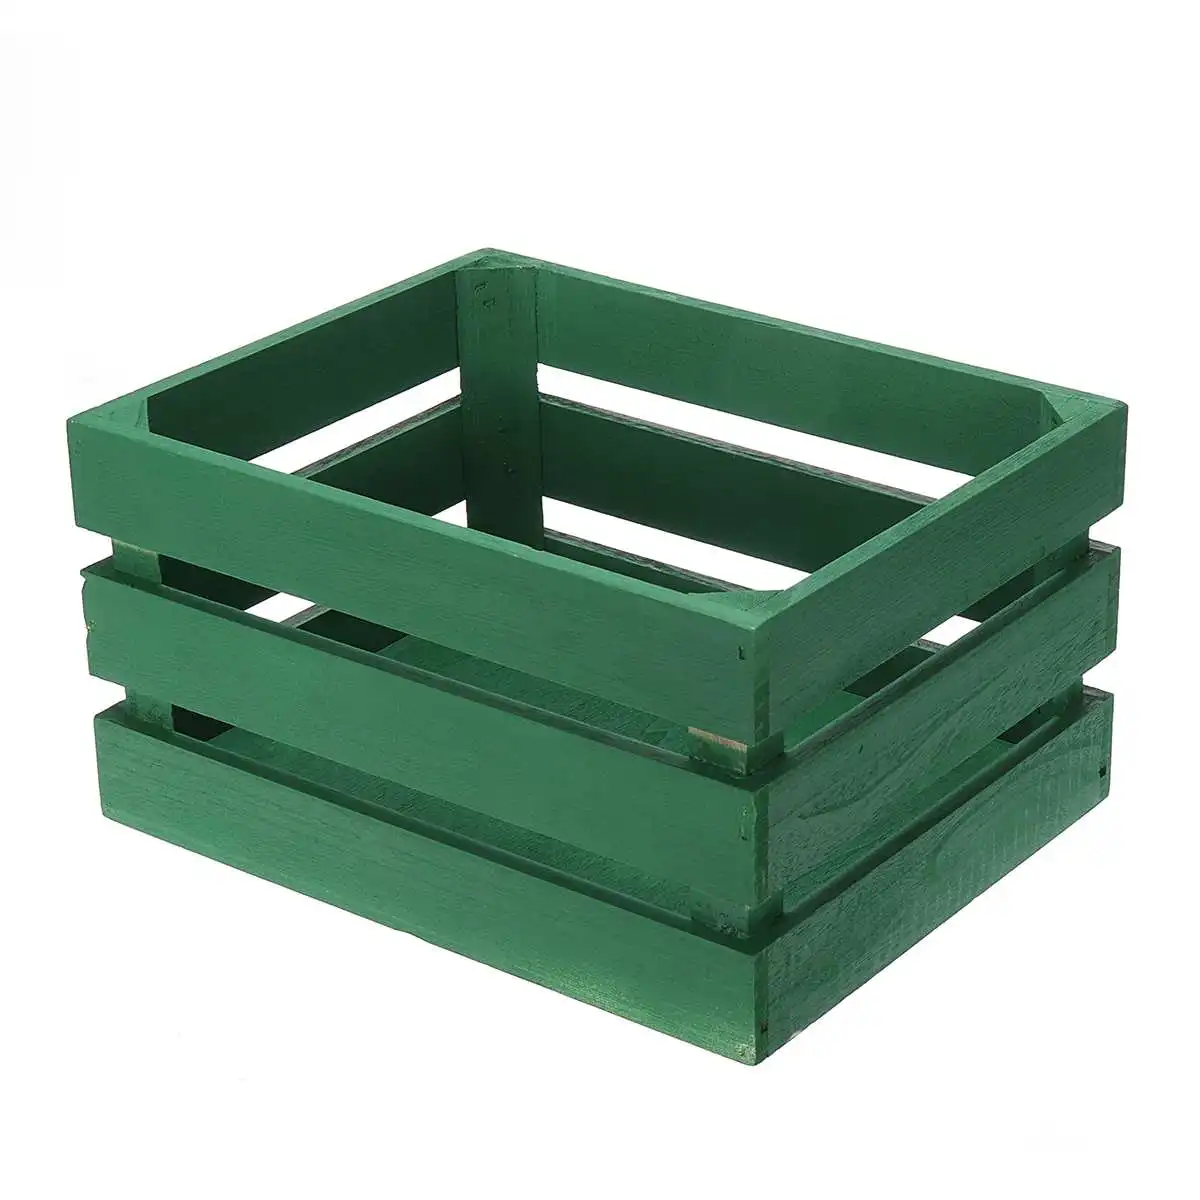 8 цветов деревянный ящик для хранения Batten утолщаются фрукты украшенная коробка ящик для посуды Косметика Органайзер коробка для хранения для дома посадки - Цвет: Green